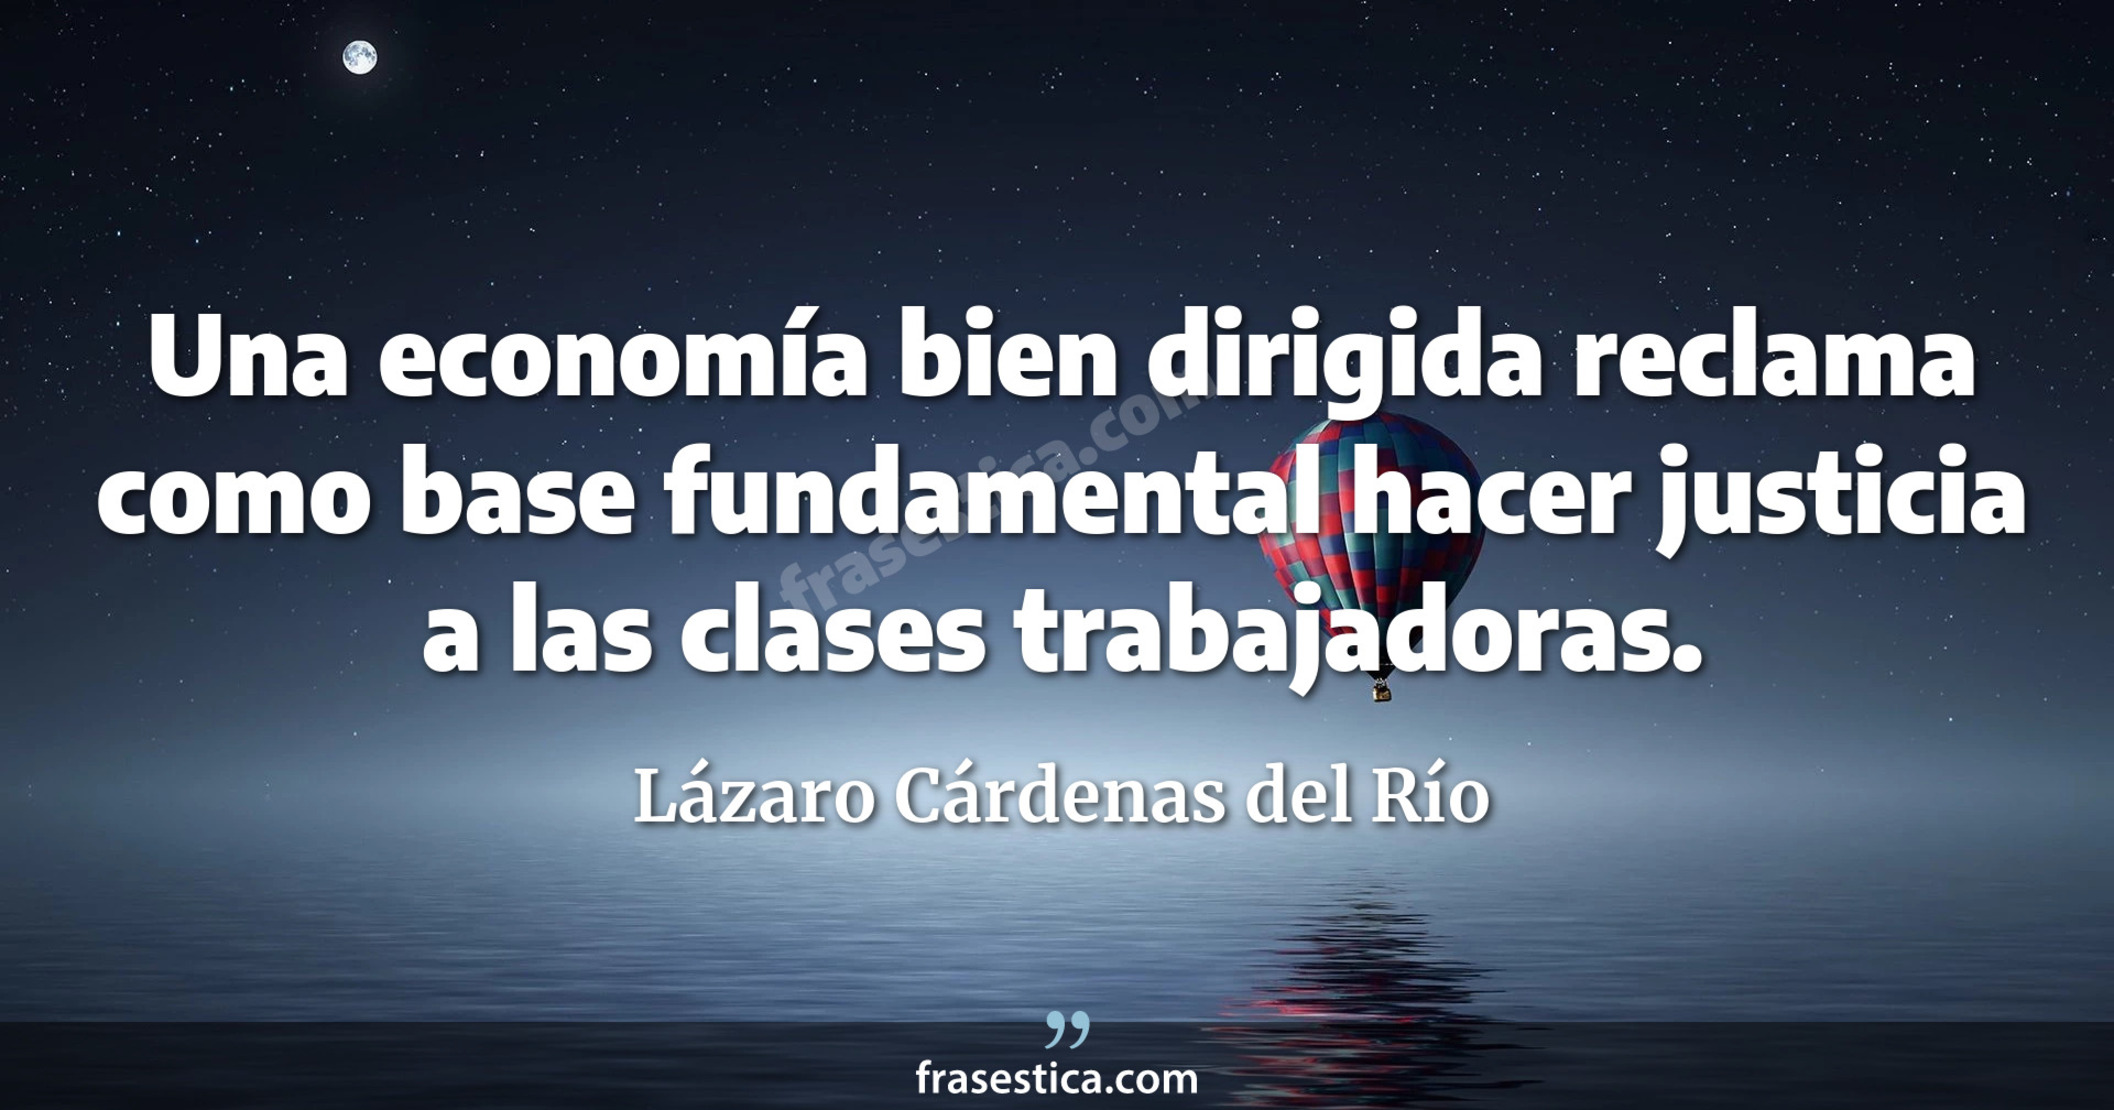 Una economía bien dirigida reclama como base fundamental hacer justicia a las clases trabajadoras. - Lázaro Cárdenas del Río